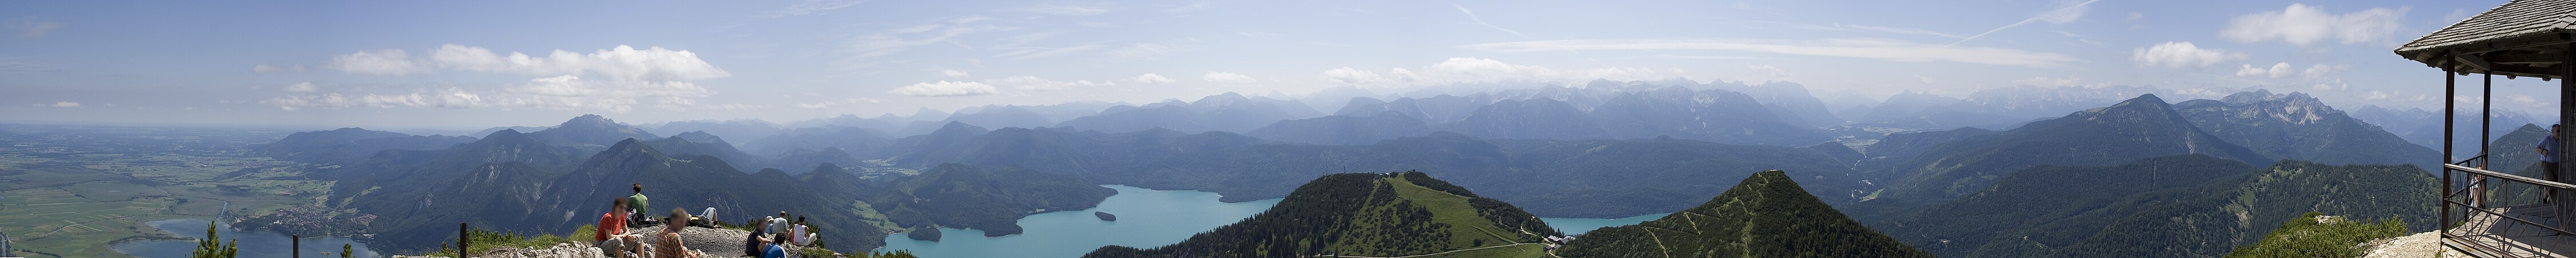 Bergpanorama mit Kochelsee, Jochberg, Walchensee und Karwendelgebirge, ... bis zum Simetsberg im Estergebirge.